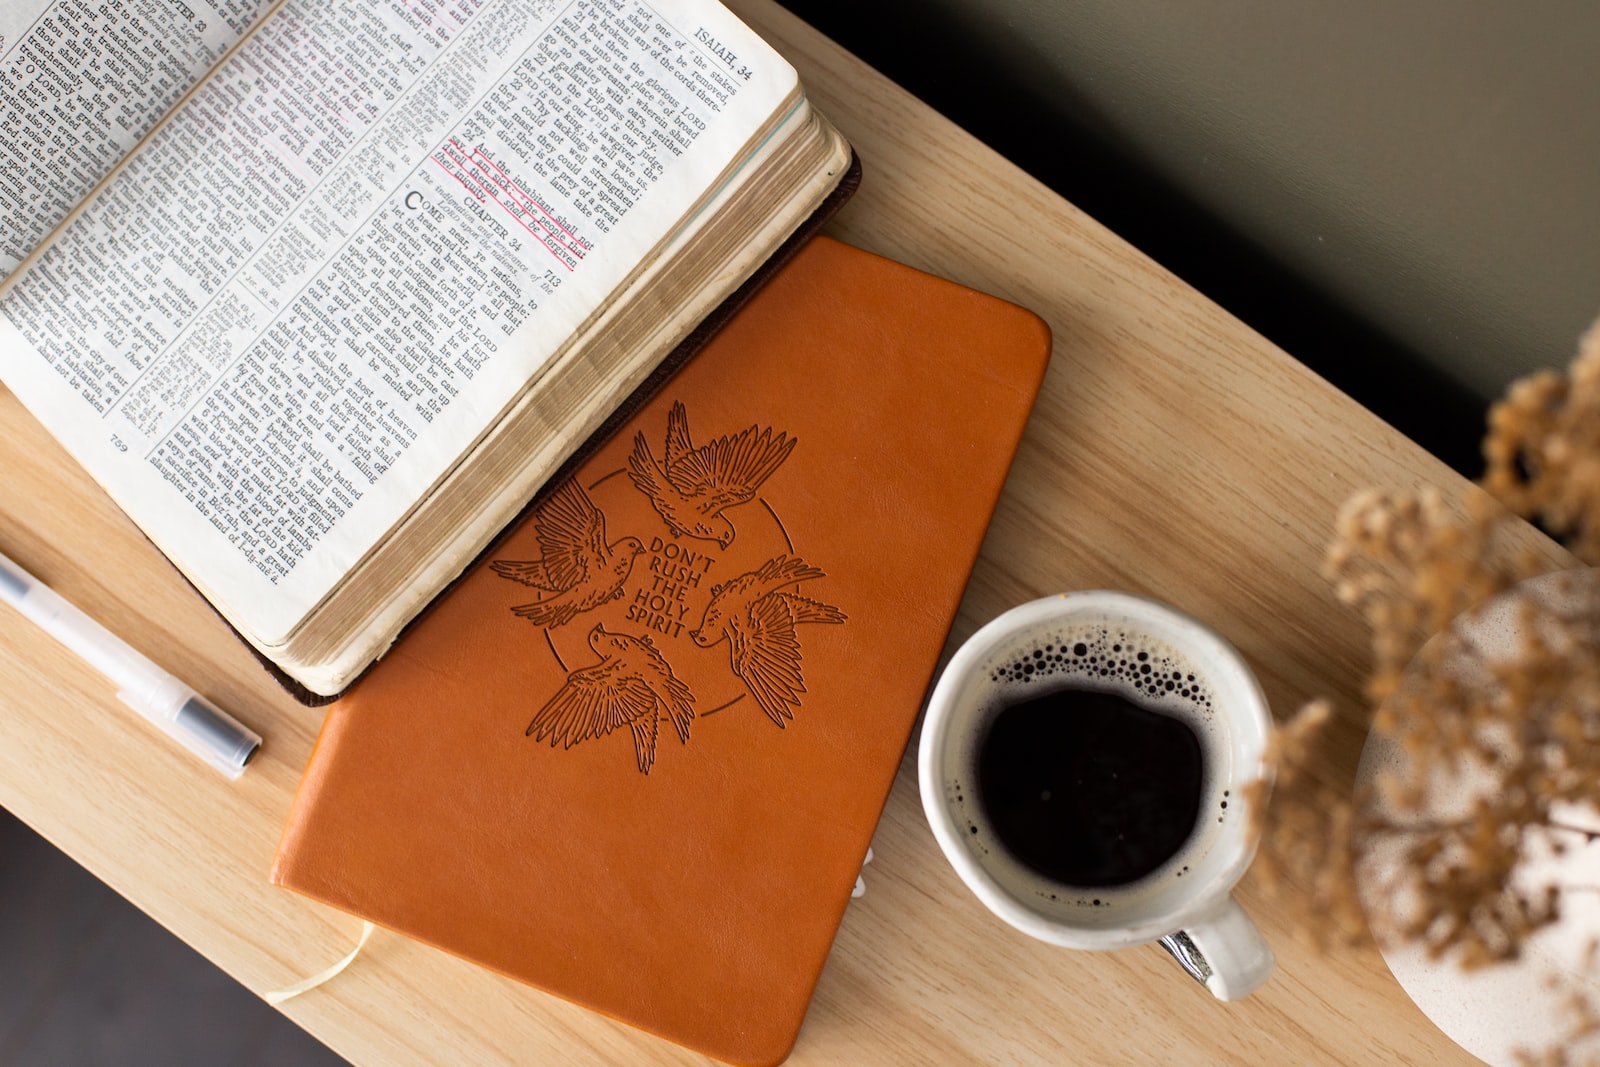 coffee, bible, book